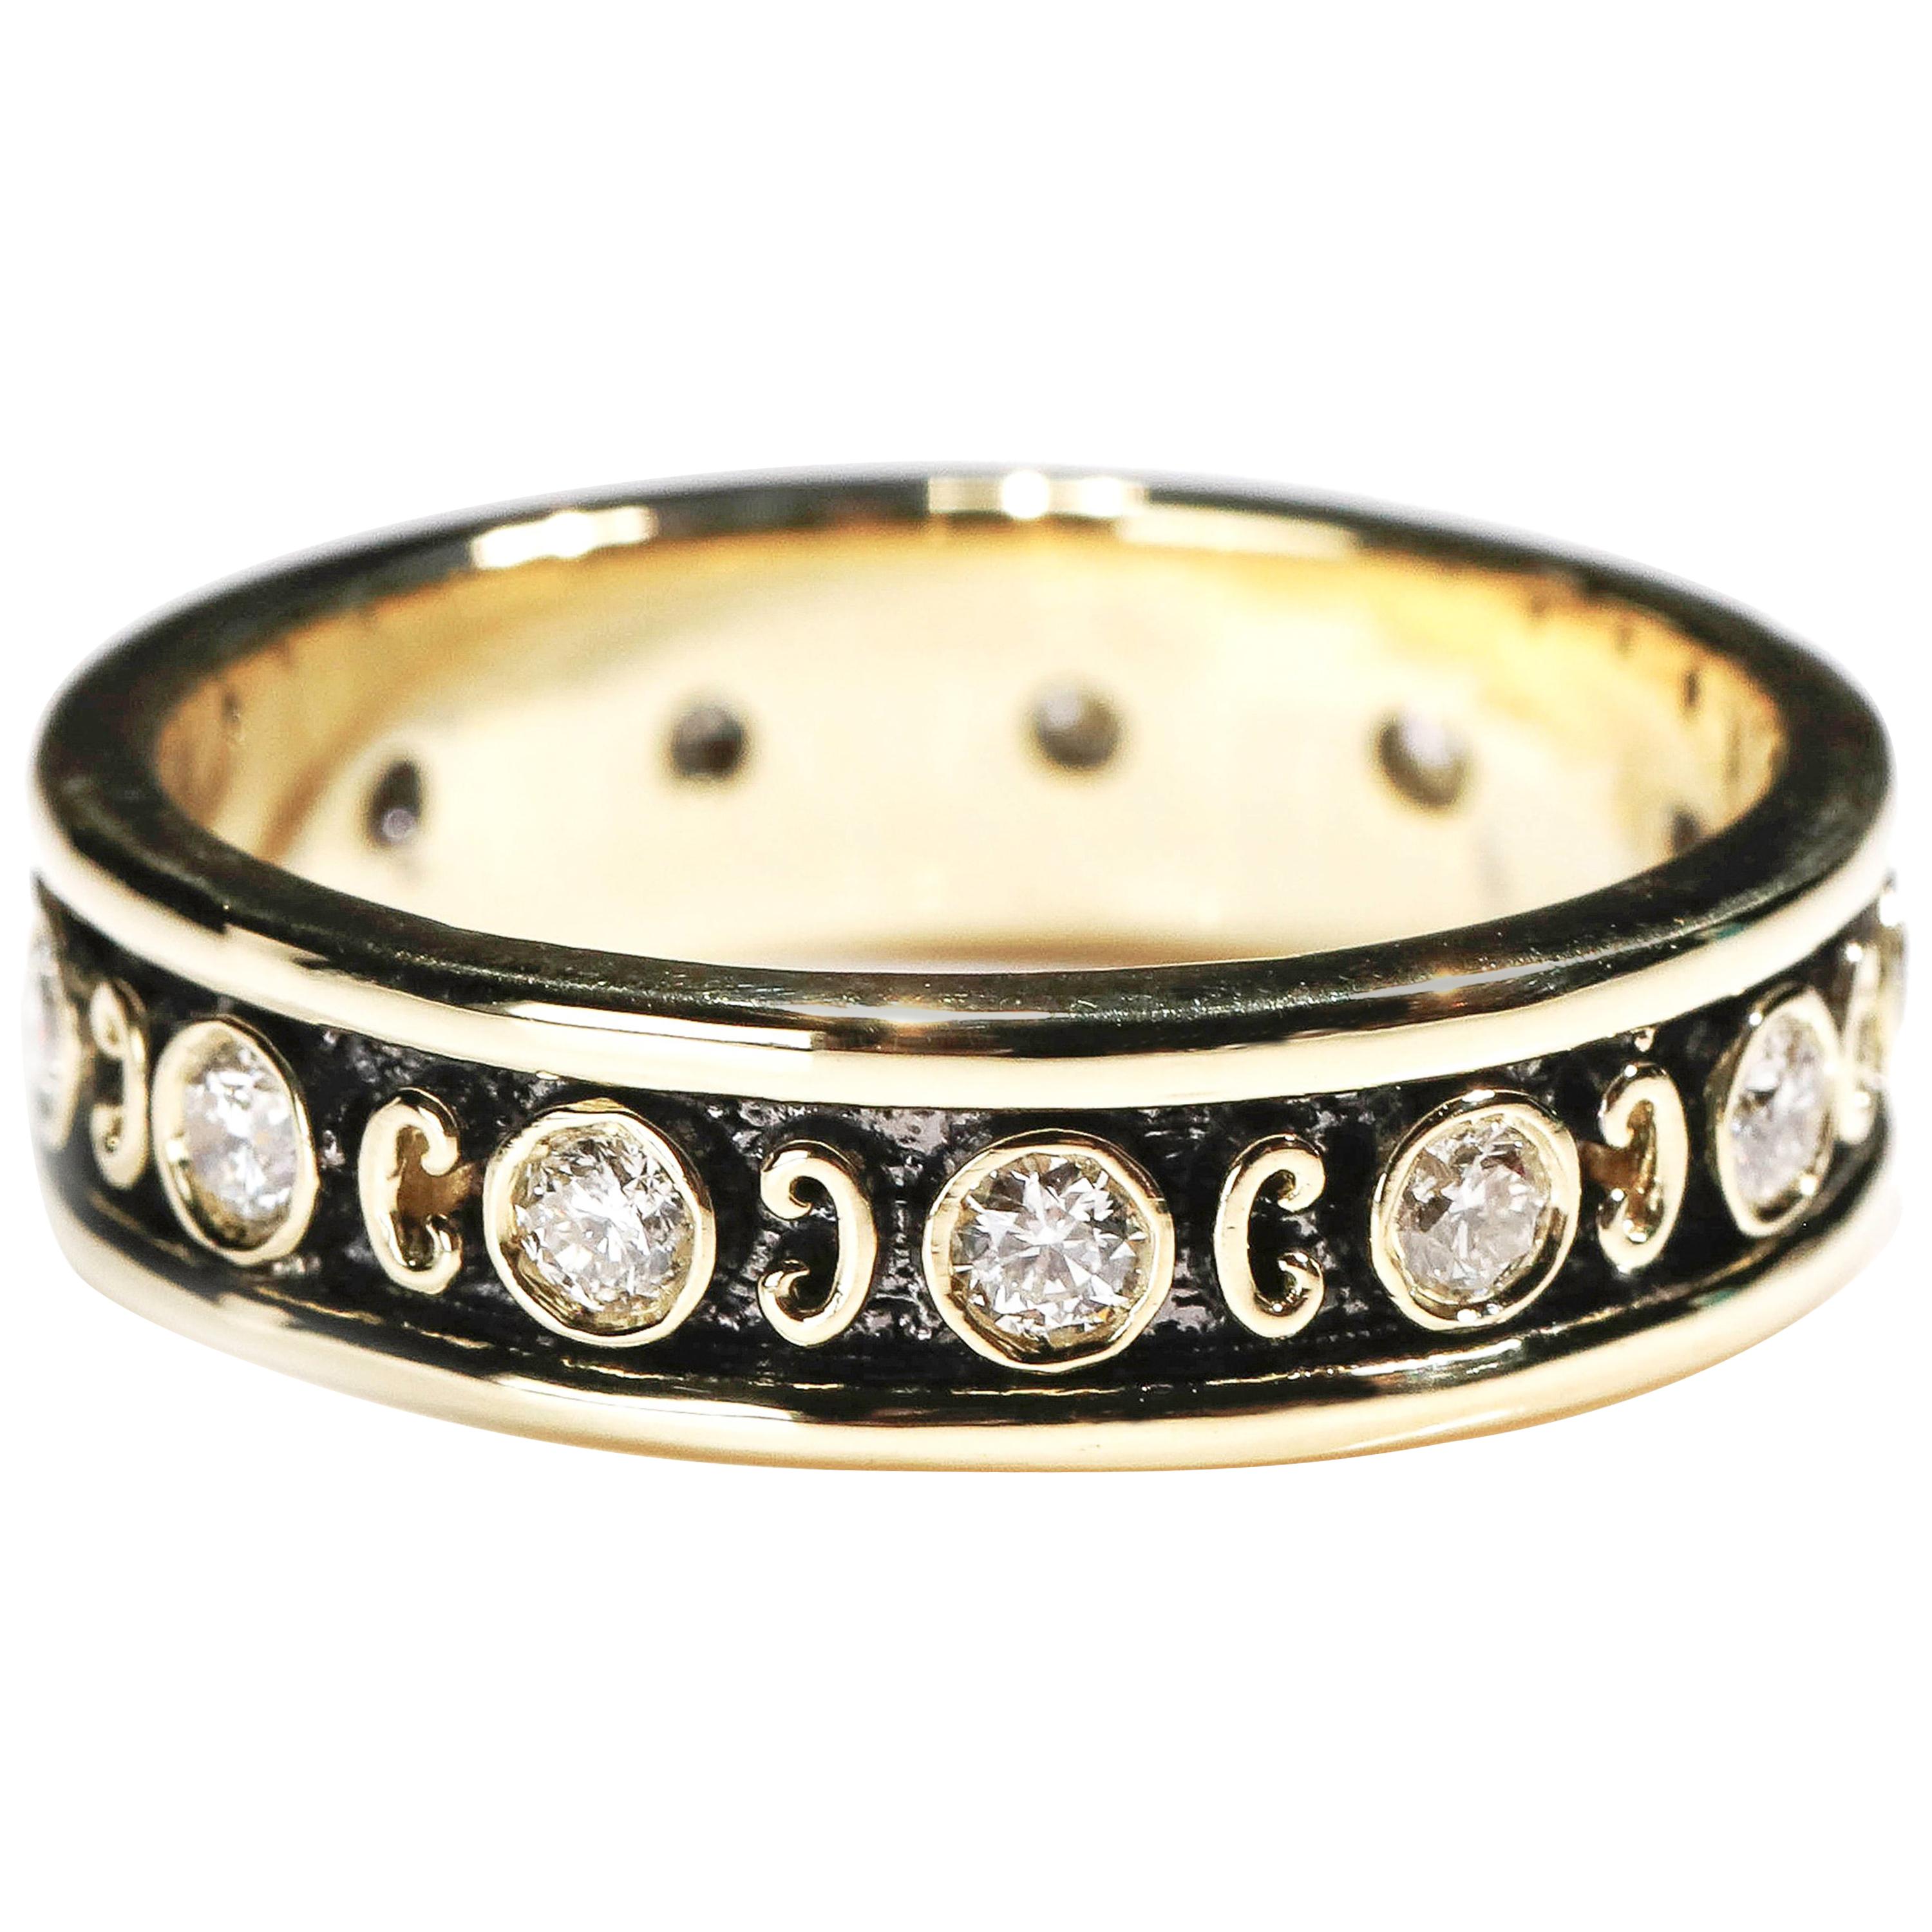 18 Karat Yellow Gold 0.80 Carat Round Cut Diamond Full Band Ring US Size 6